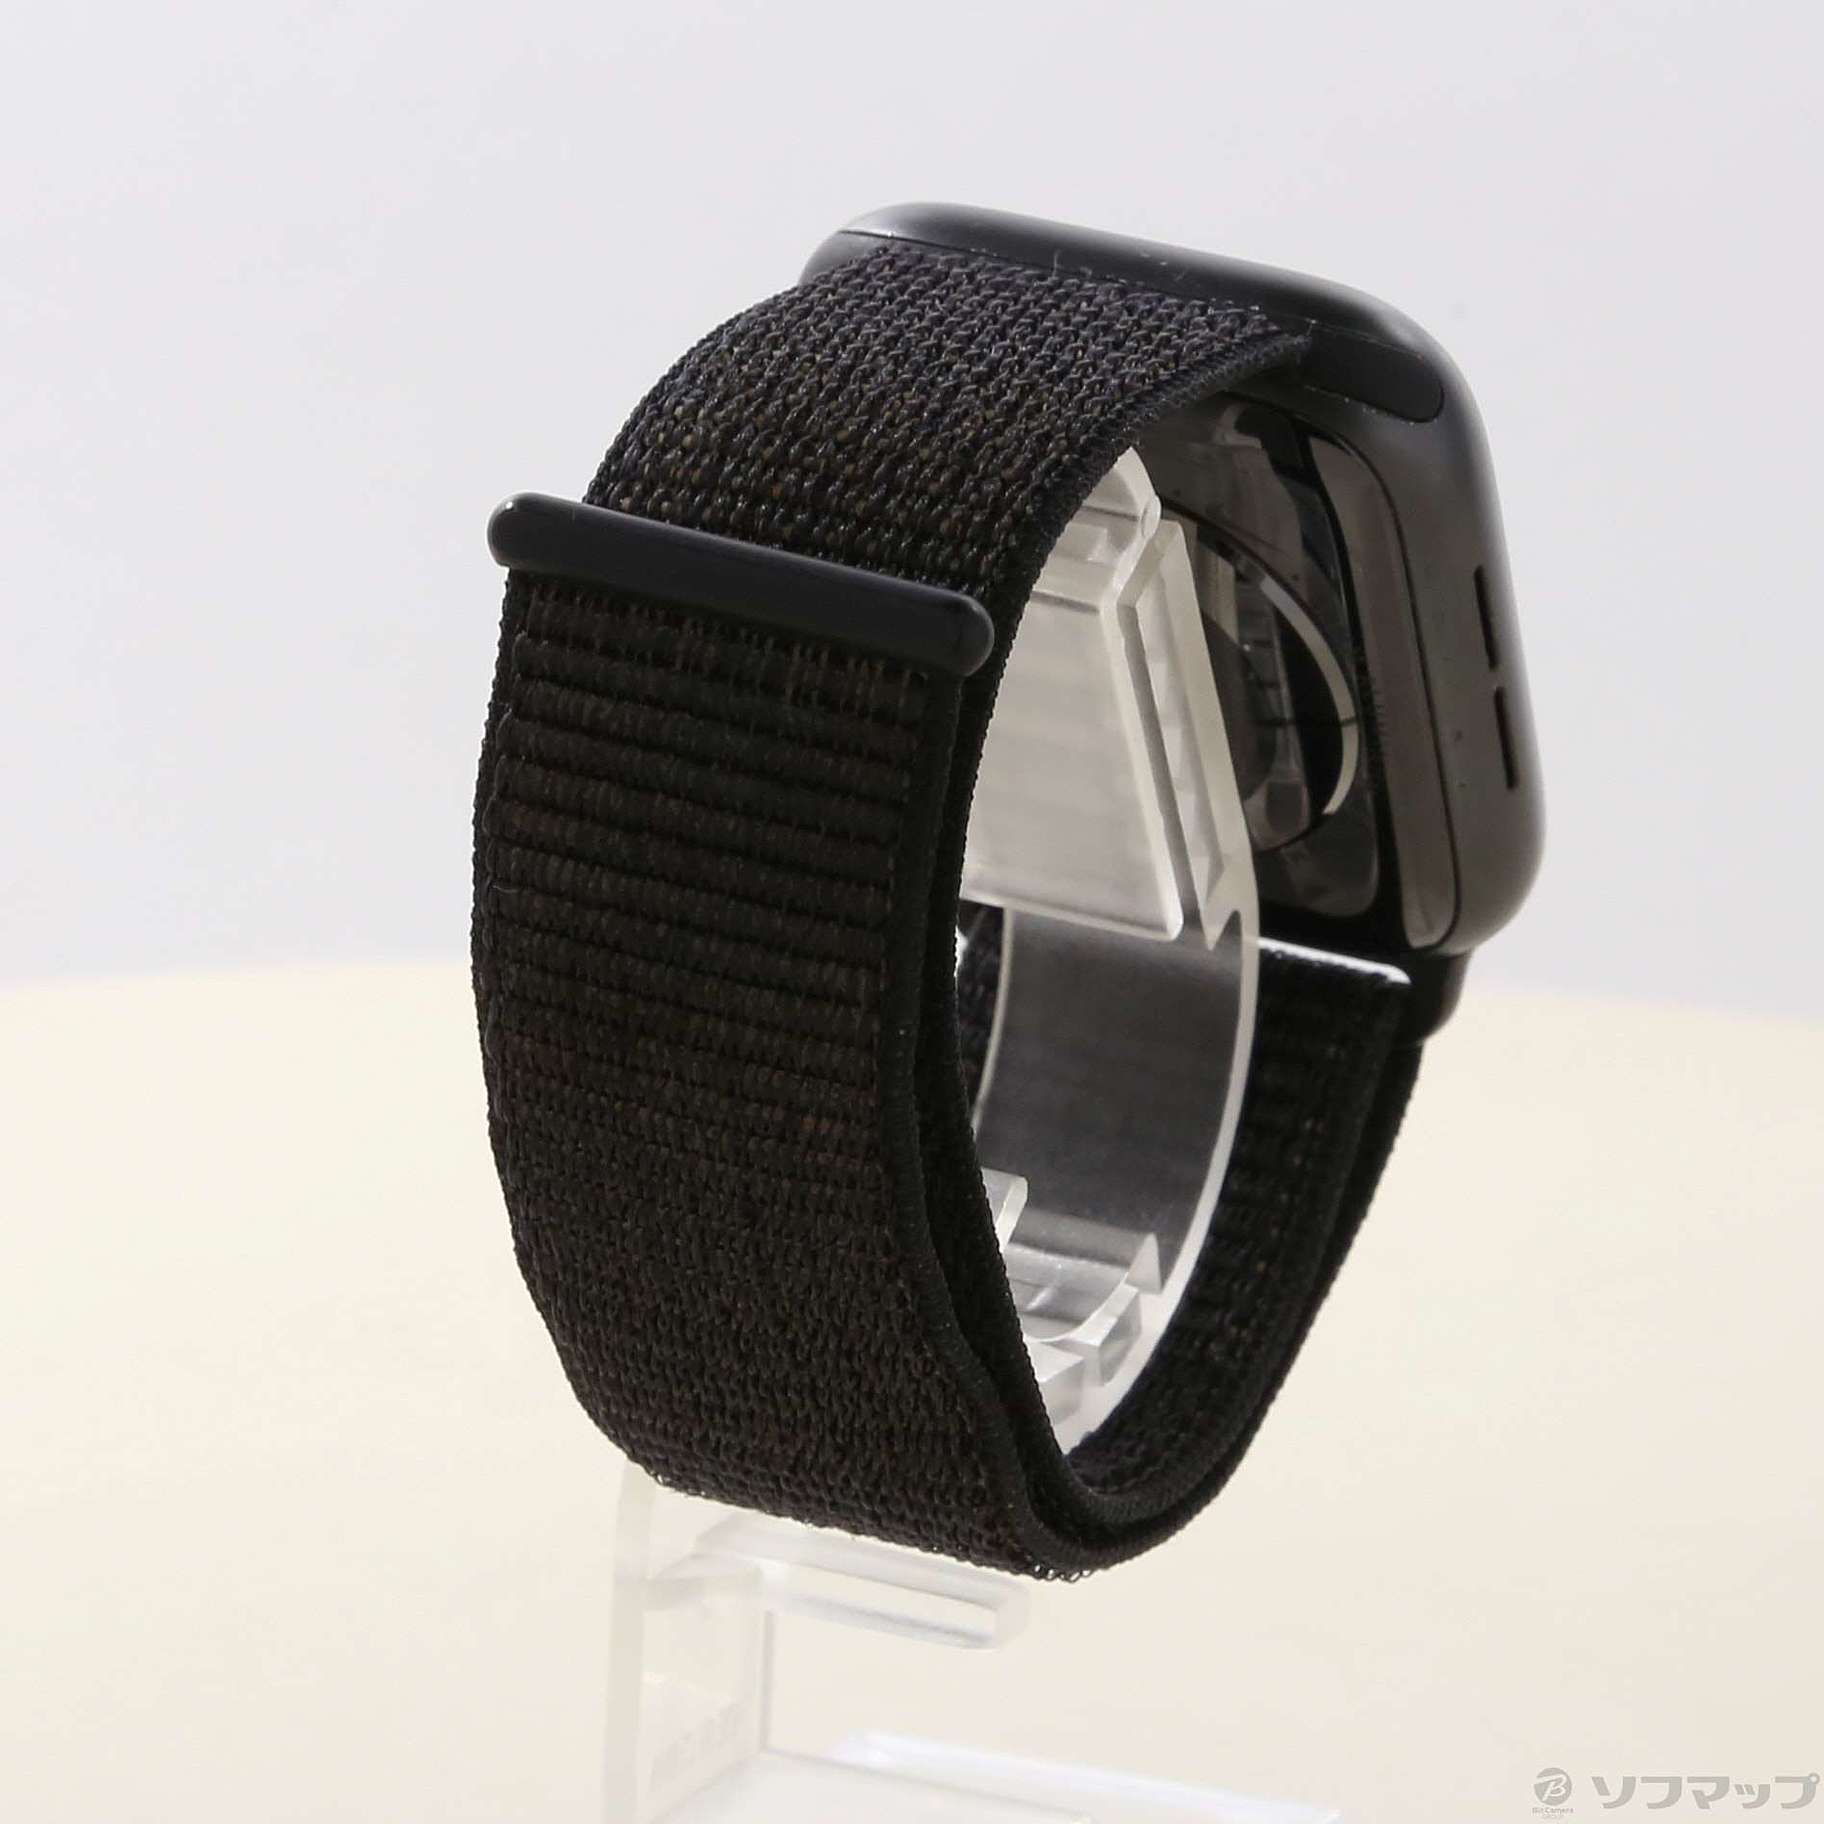 Apple Watch Series 5 Nike GPS 44mm スペースグレイアルミニウムケース ブラックNikeスポーツループ